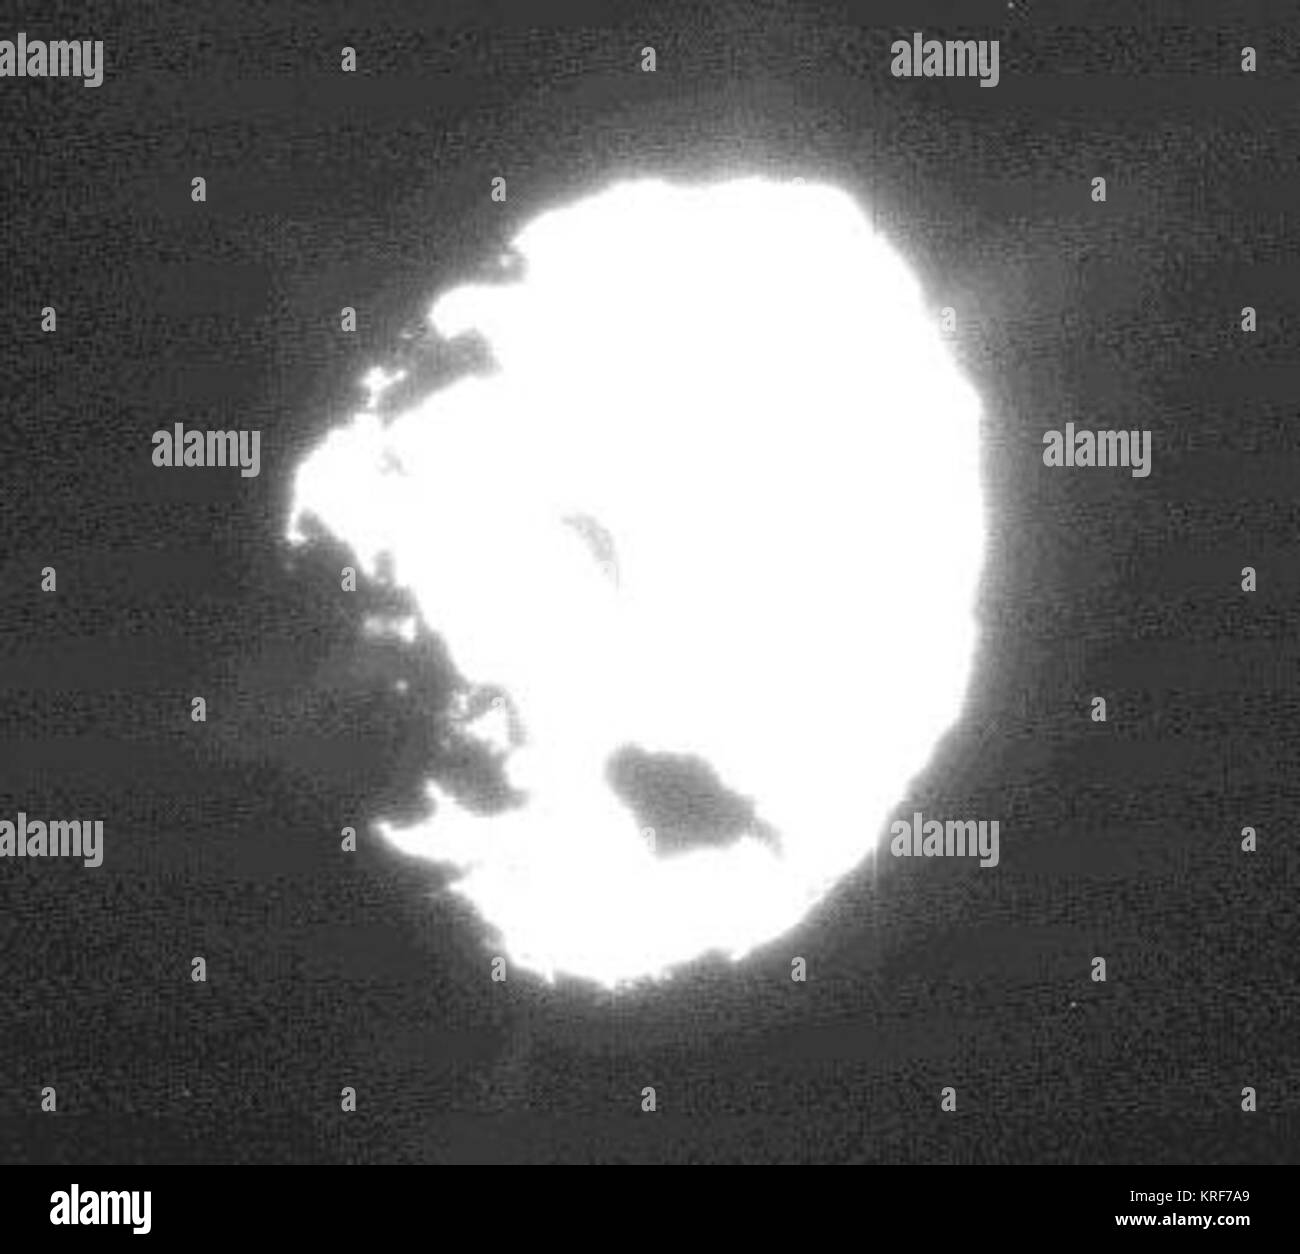 Comet wild 2 jet plumes Stock Photo